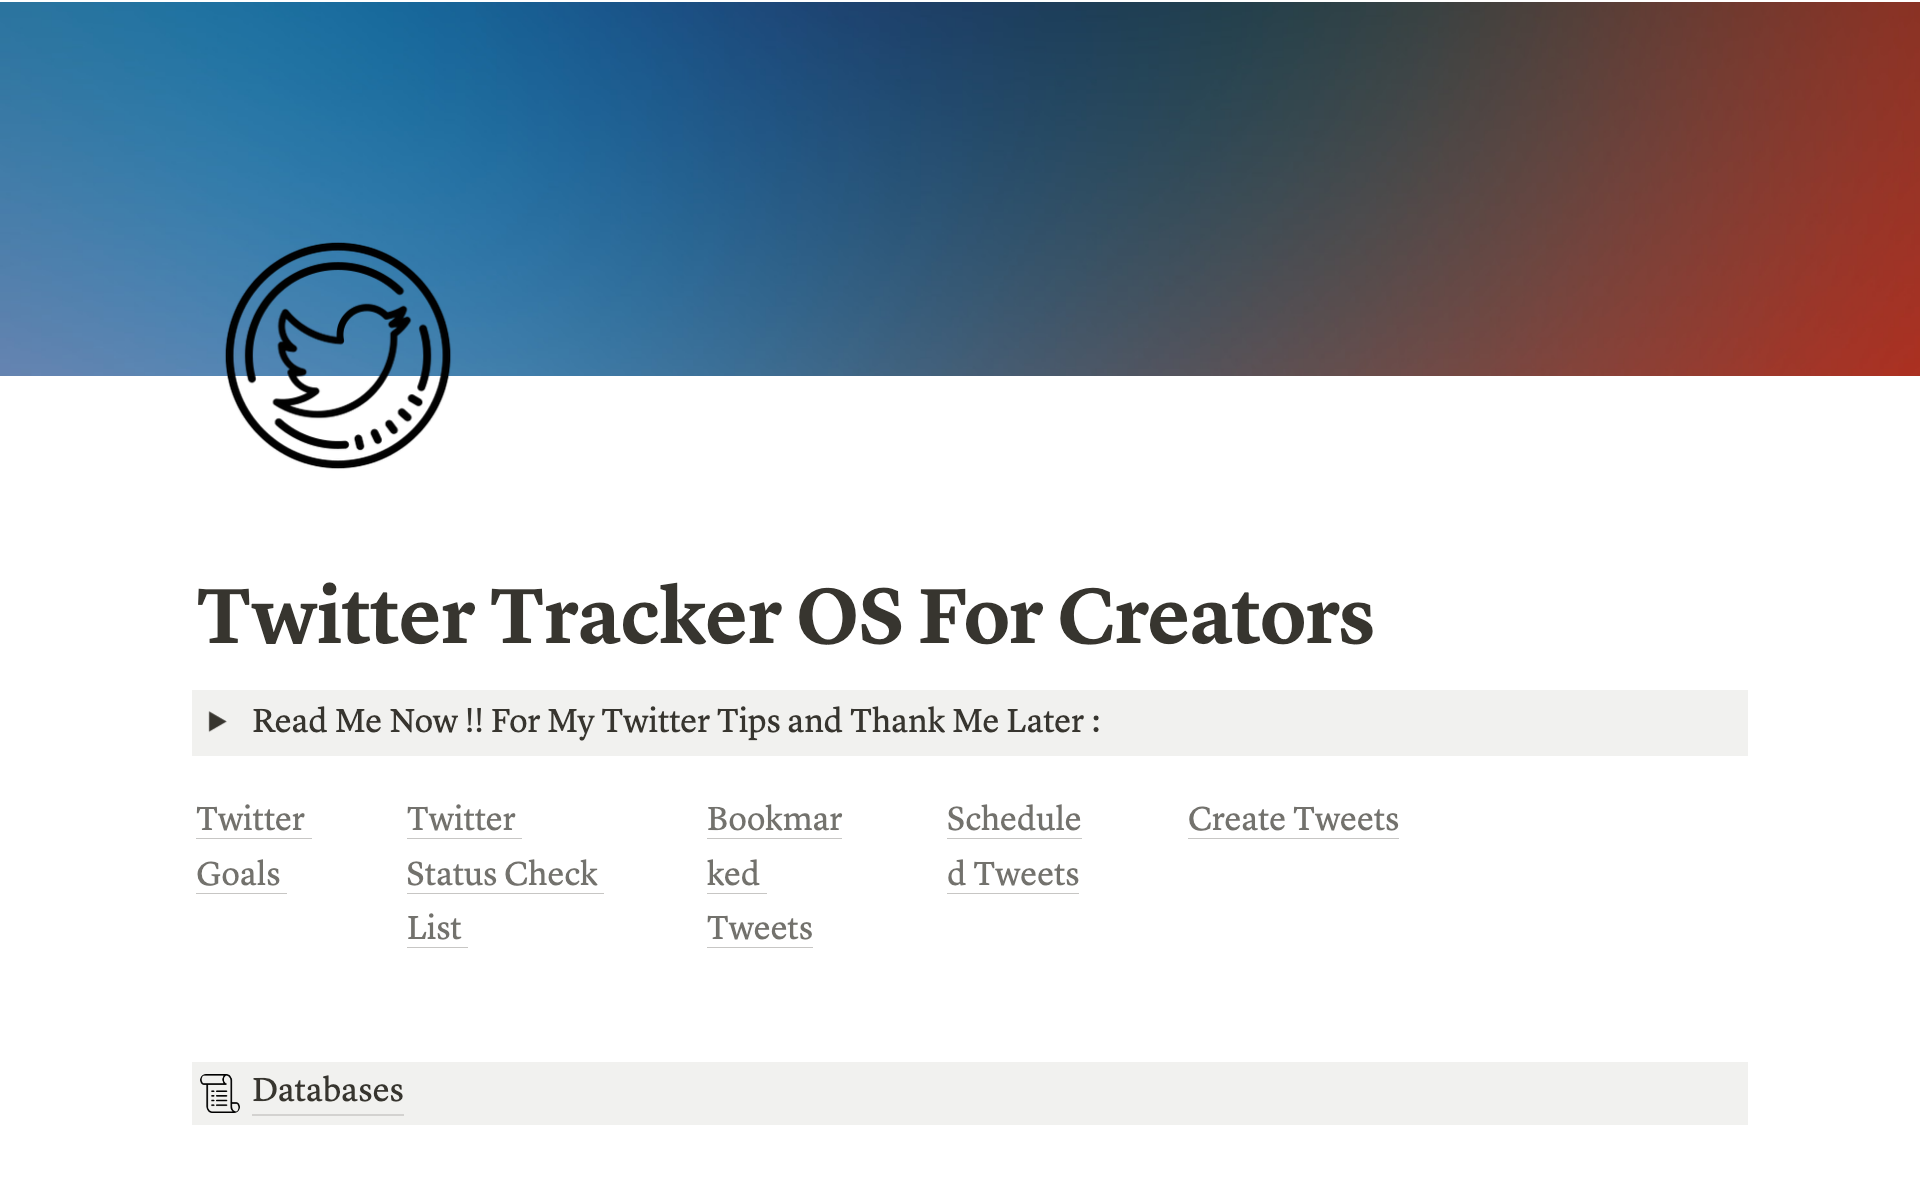 Vista previa de una plantilla para Twitter OS For Creators